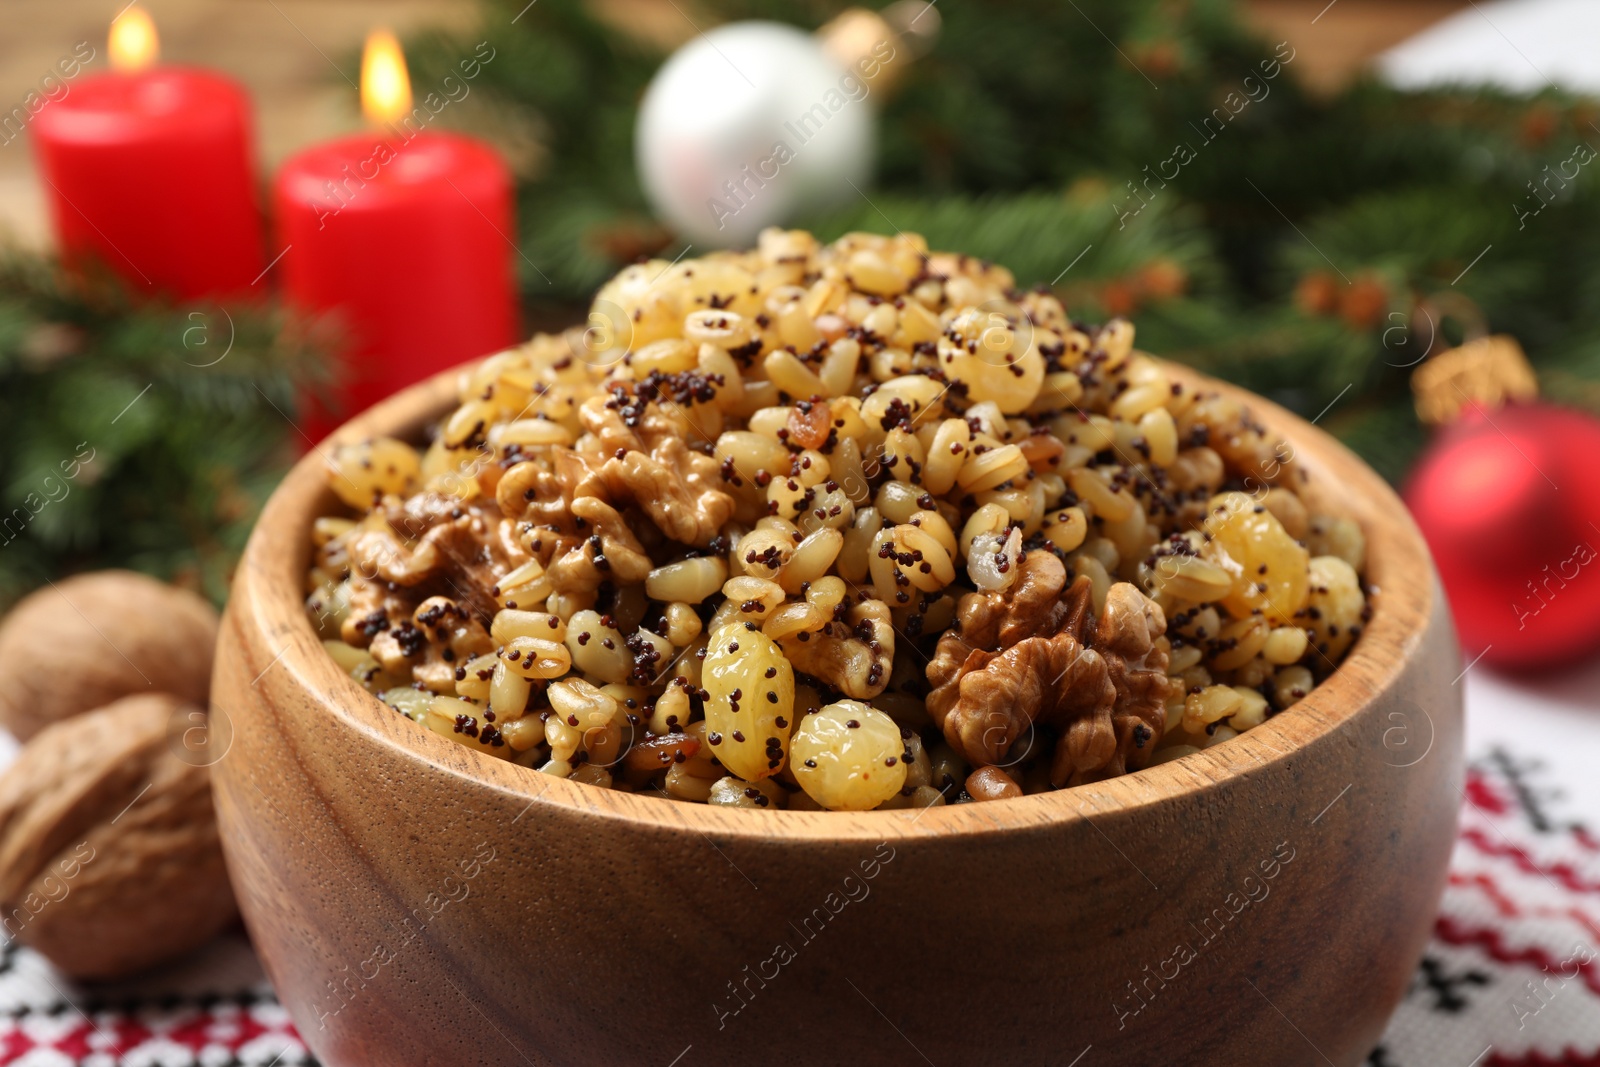 Photo of Traditional Christmas slavic dish kutia in bowl, closeup